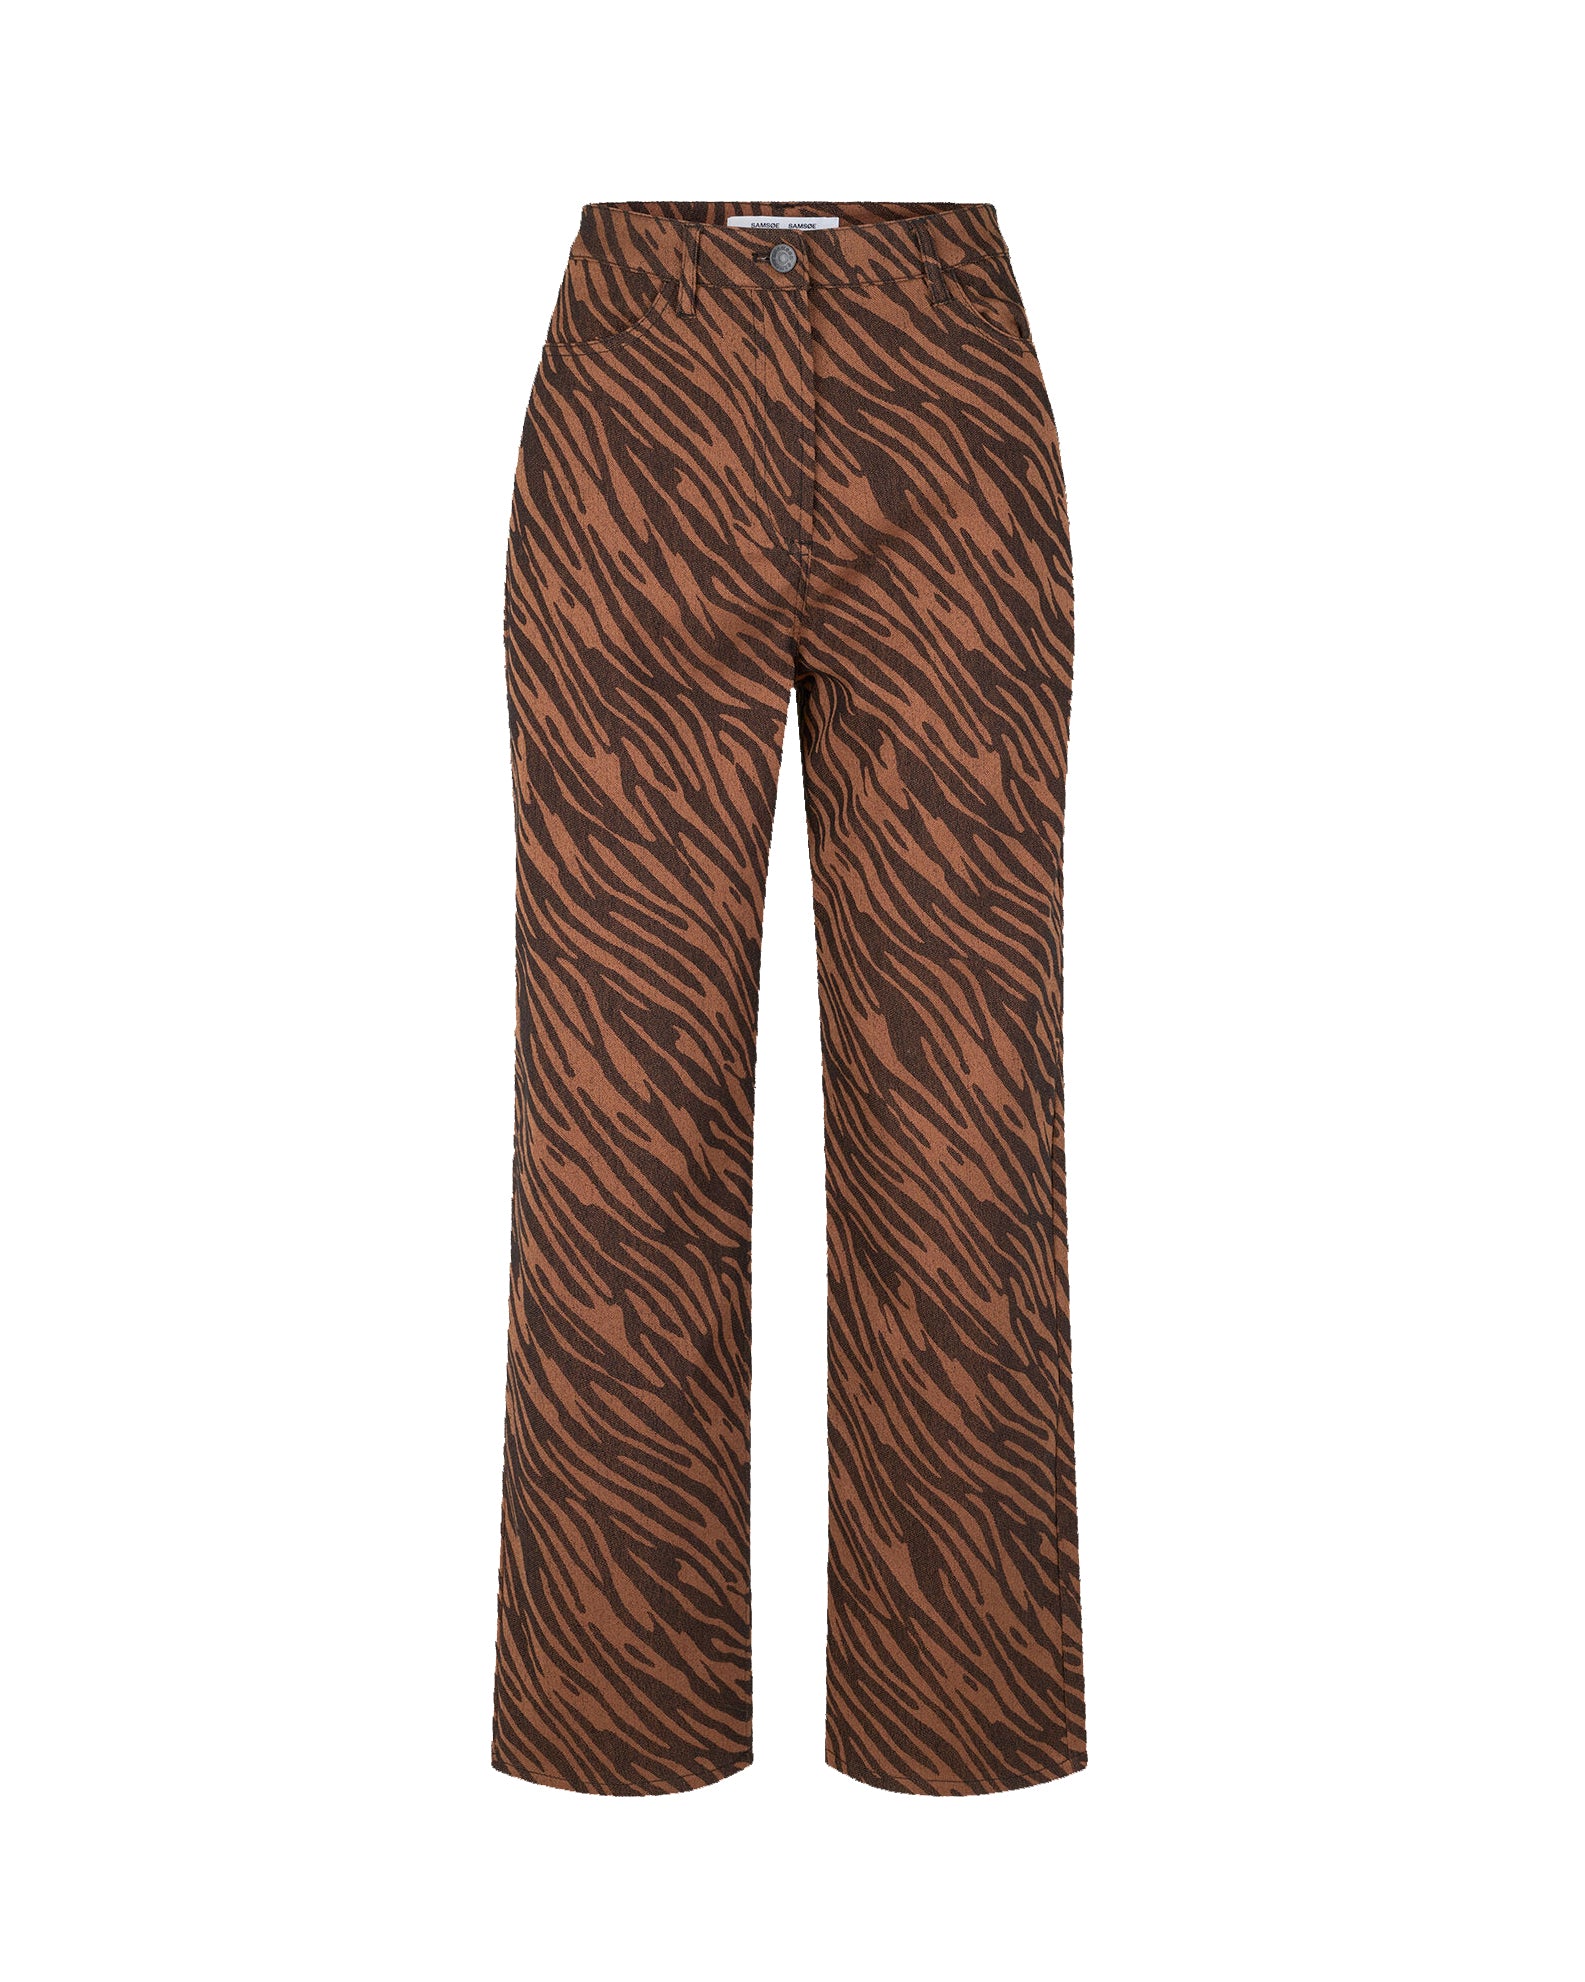 Pantalones Noa 14601 - Tiger